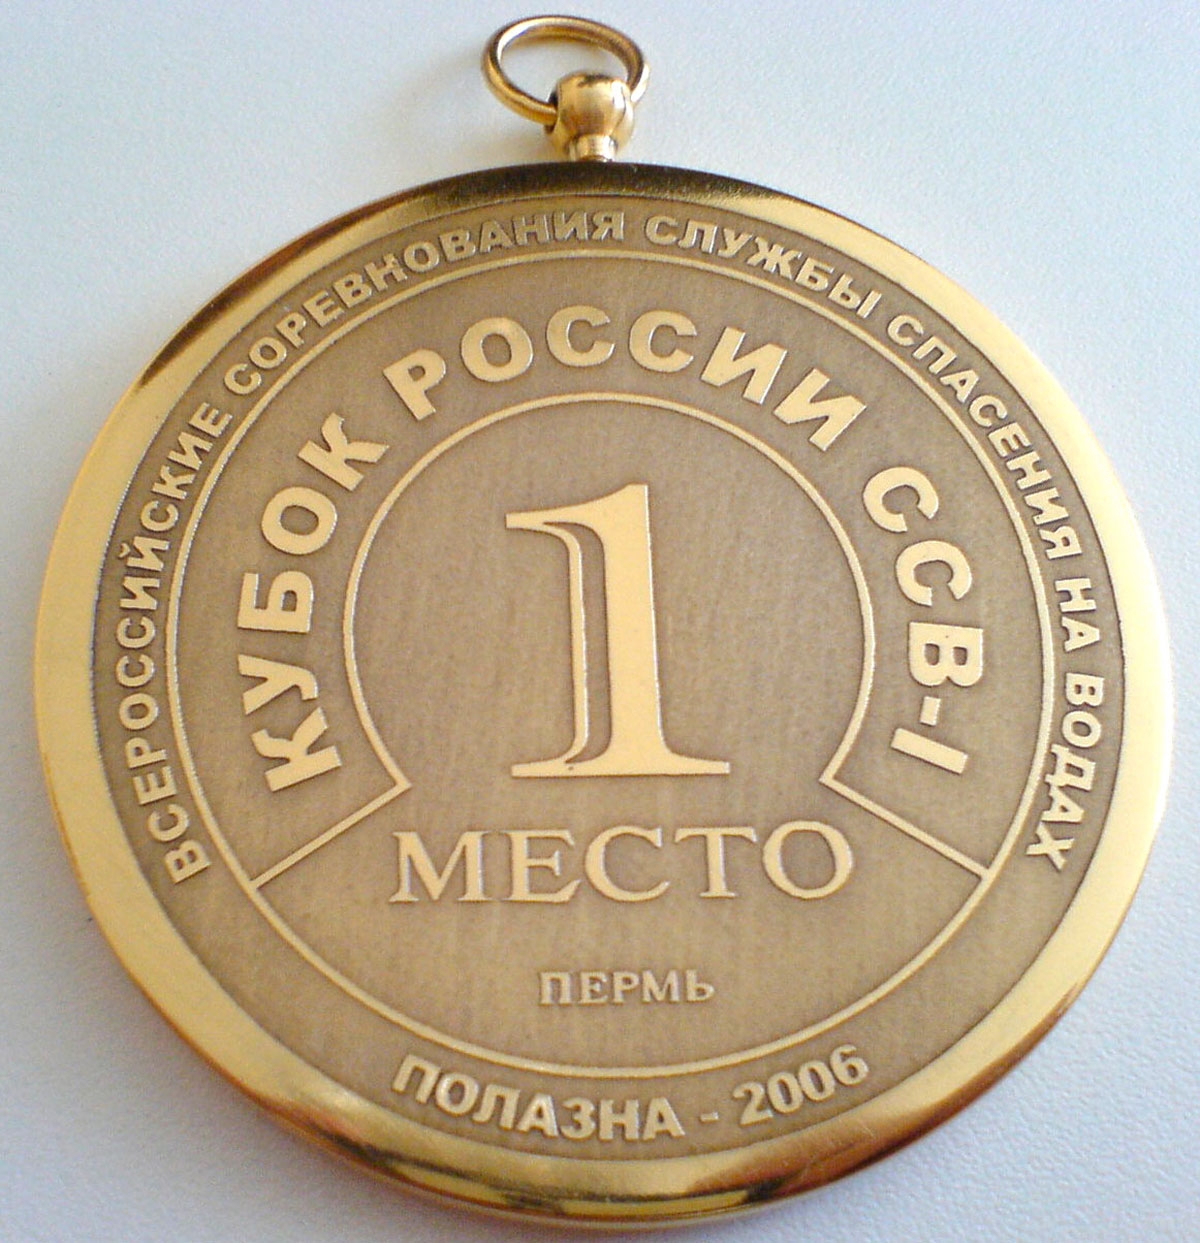 Медаль корпоративная по индивидуальному заказу.